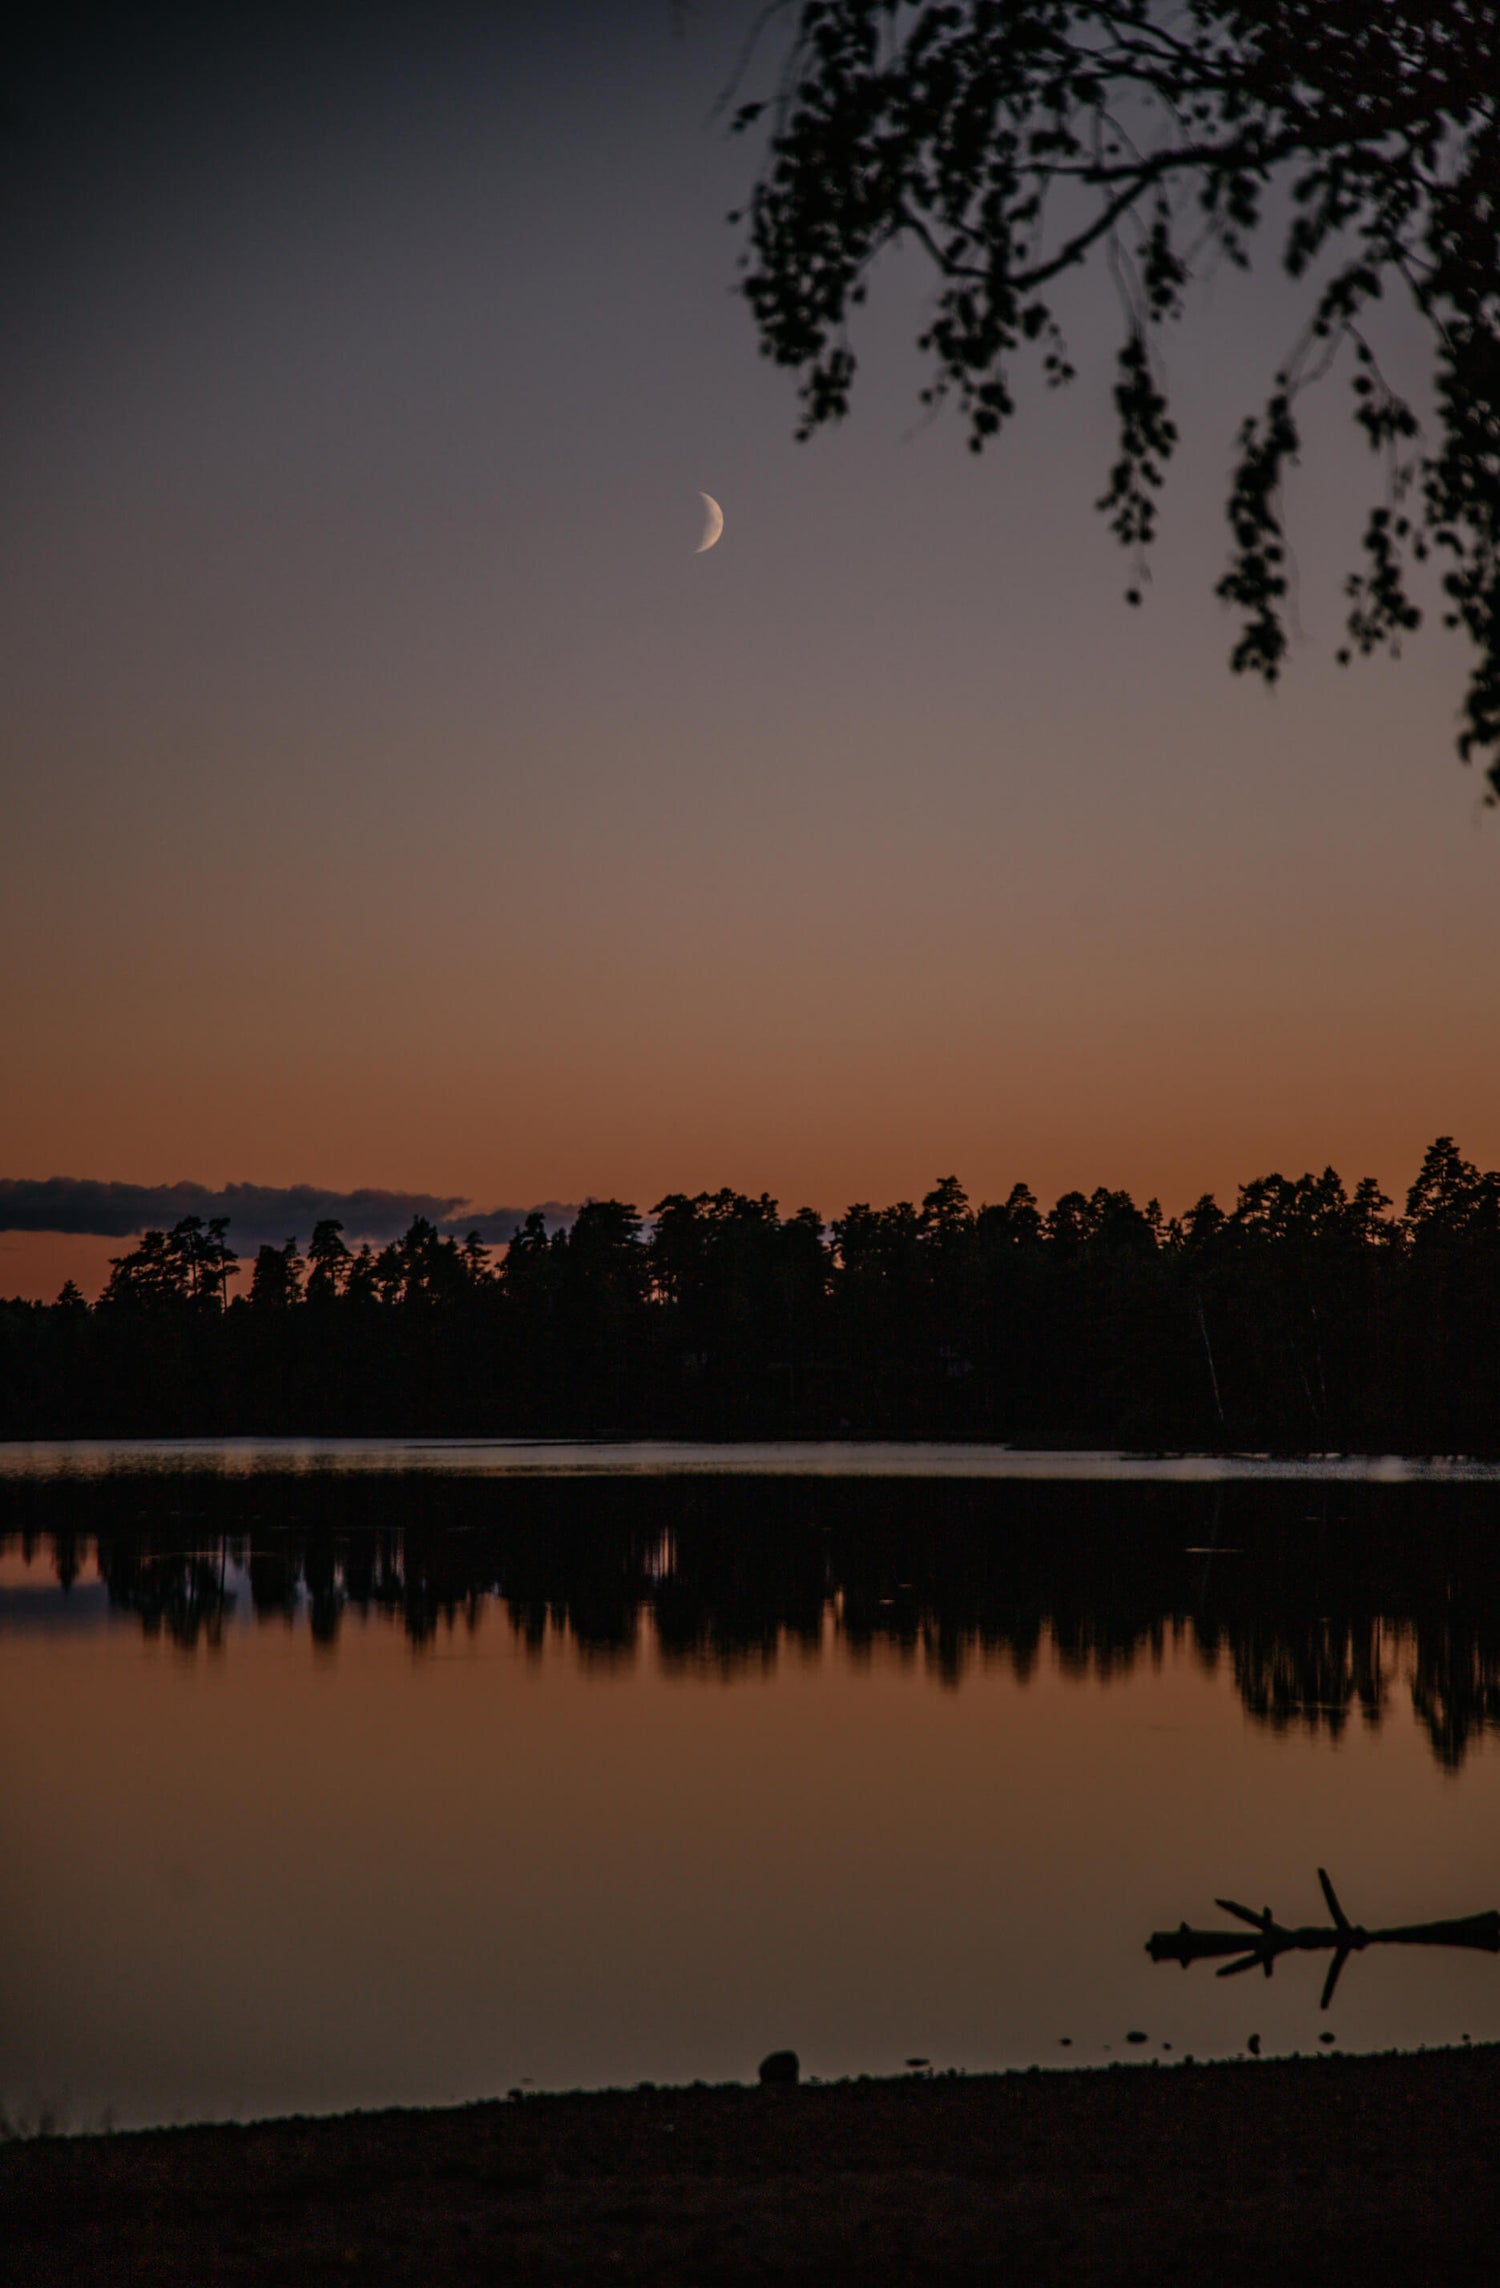 Sonnenuntergang in Schweden am See. Der Mond zeigt sich schon am Himmel. 